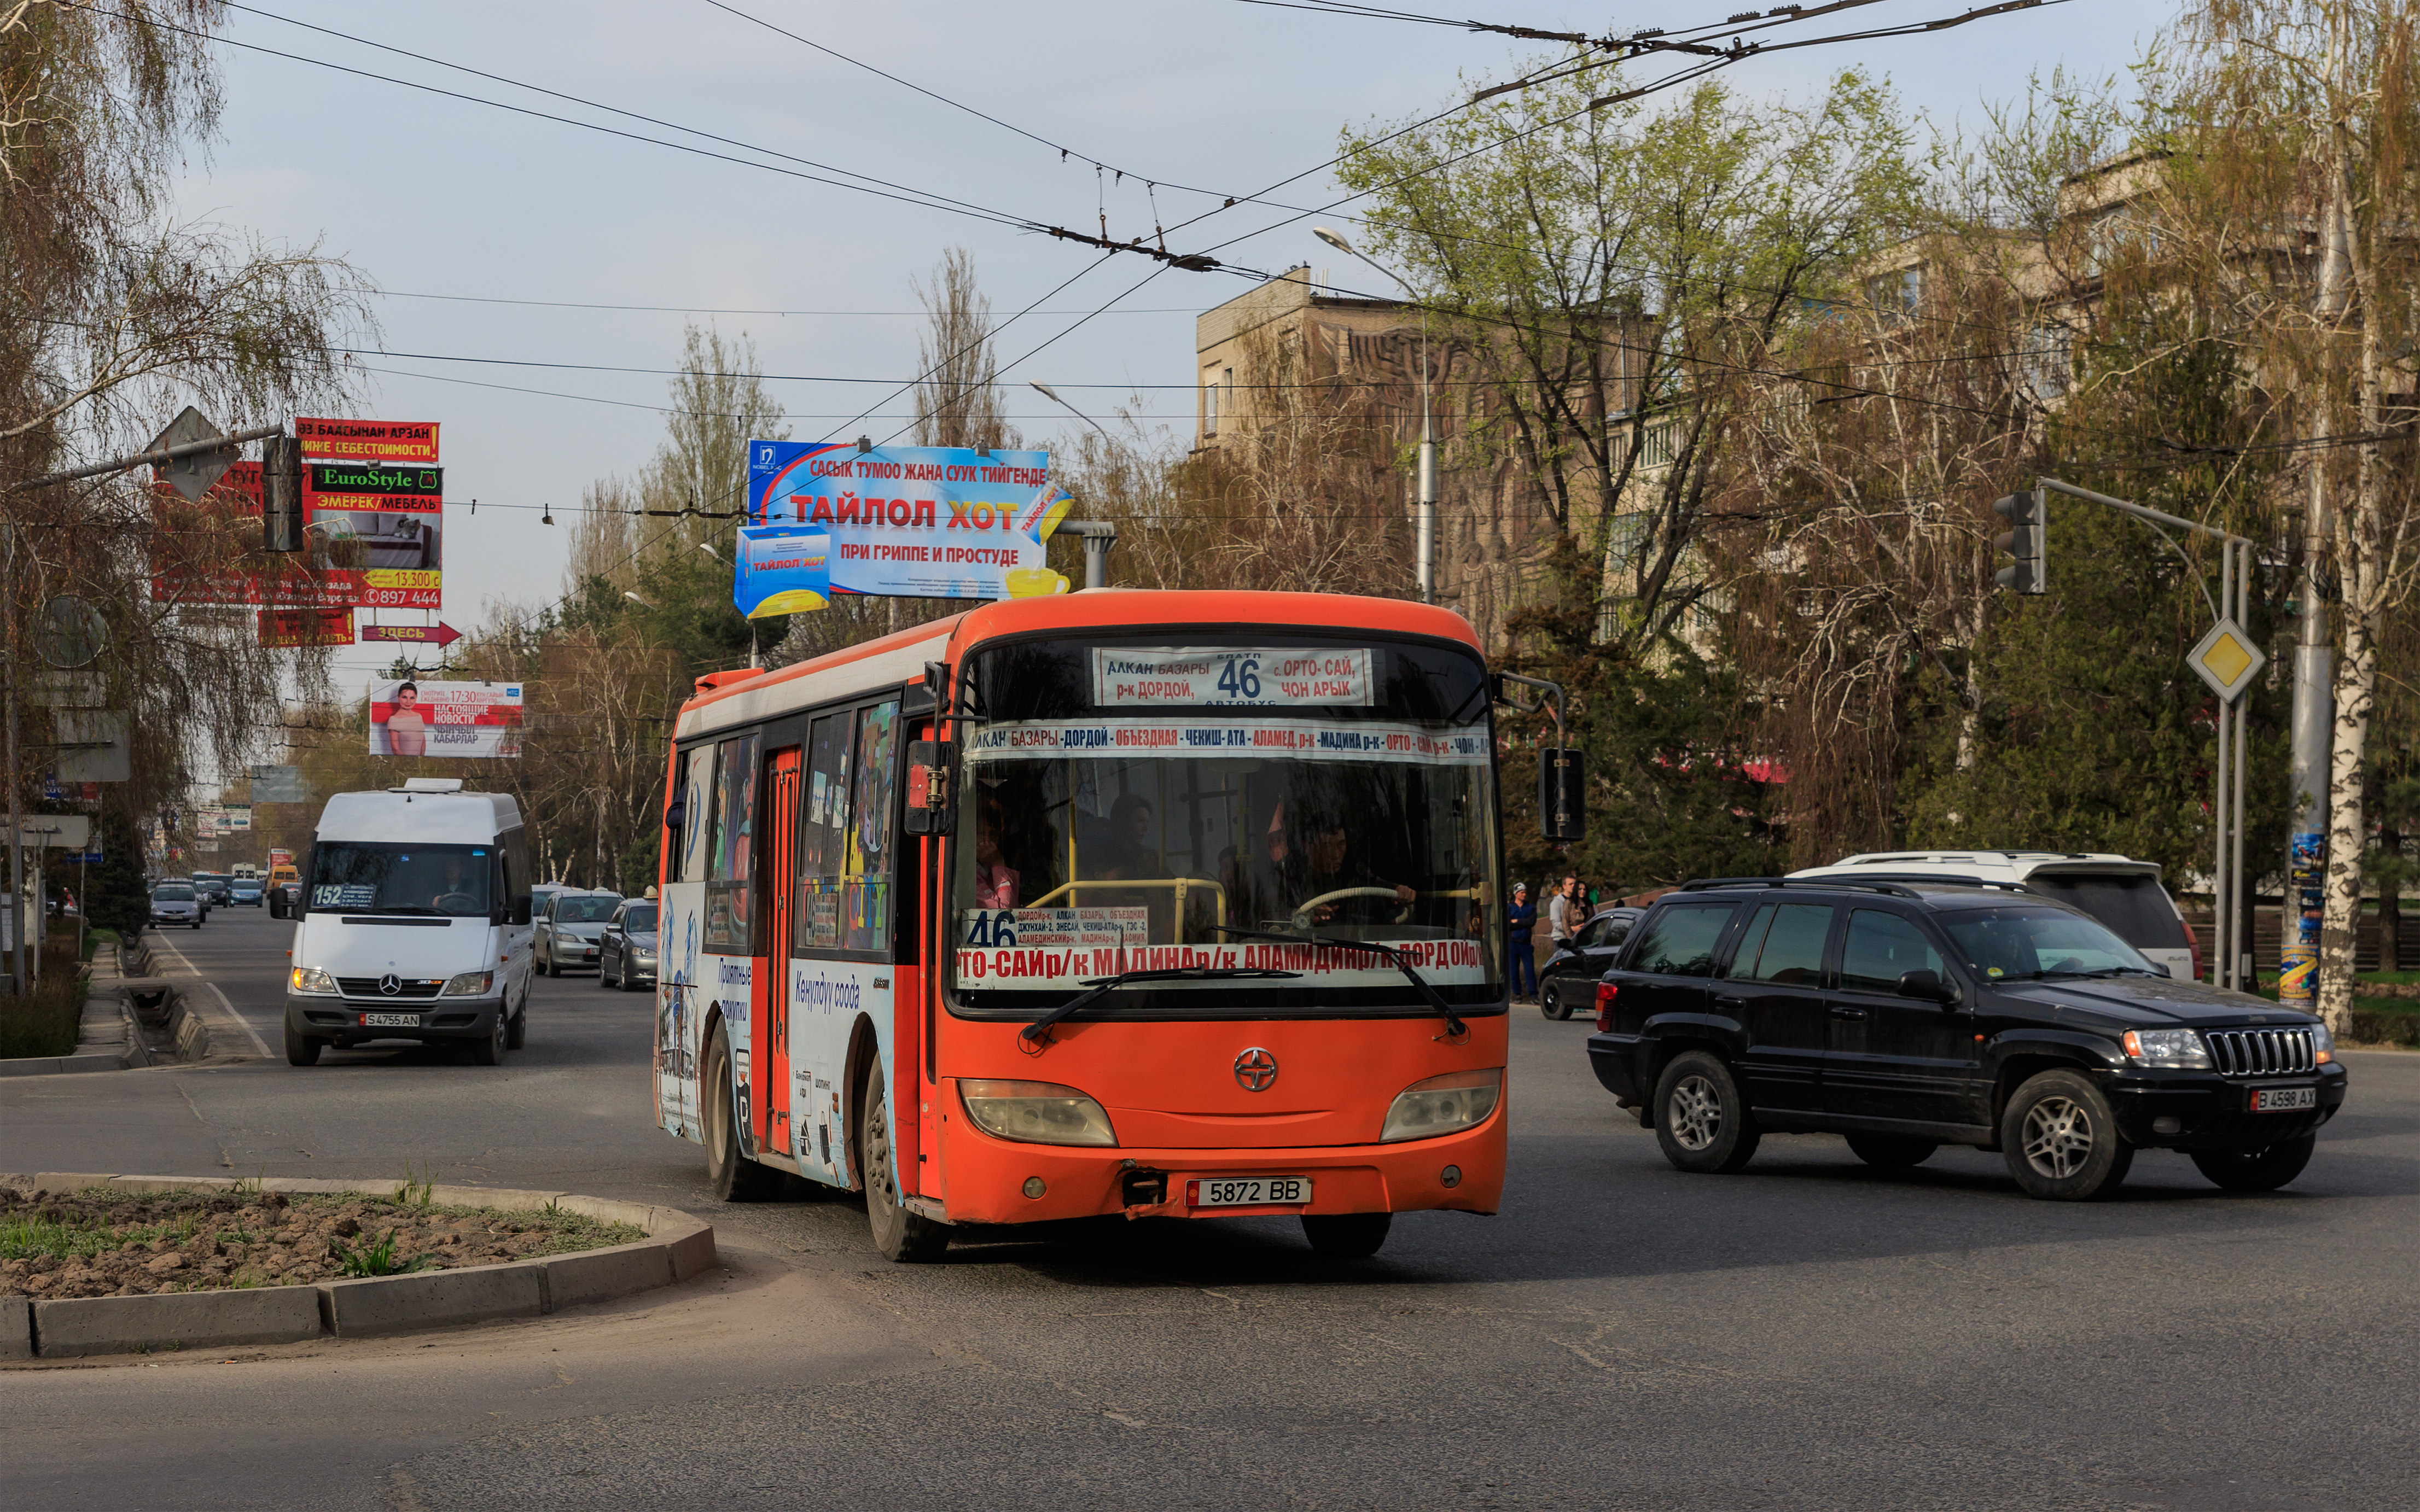 Bishkek 03-2016 img35 bus near South Gate